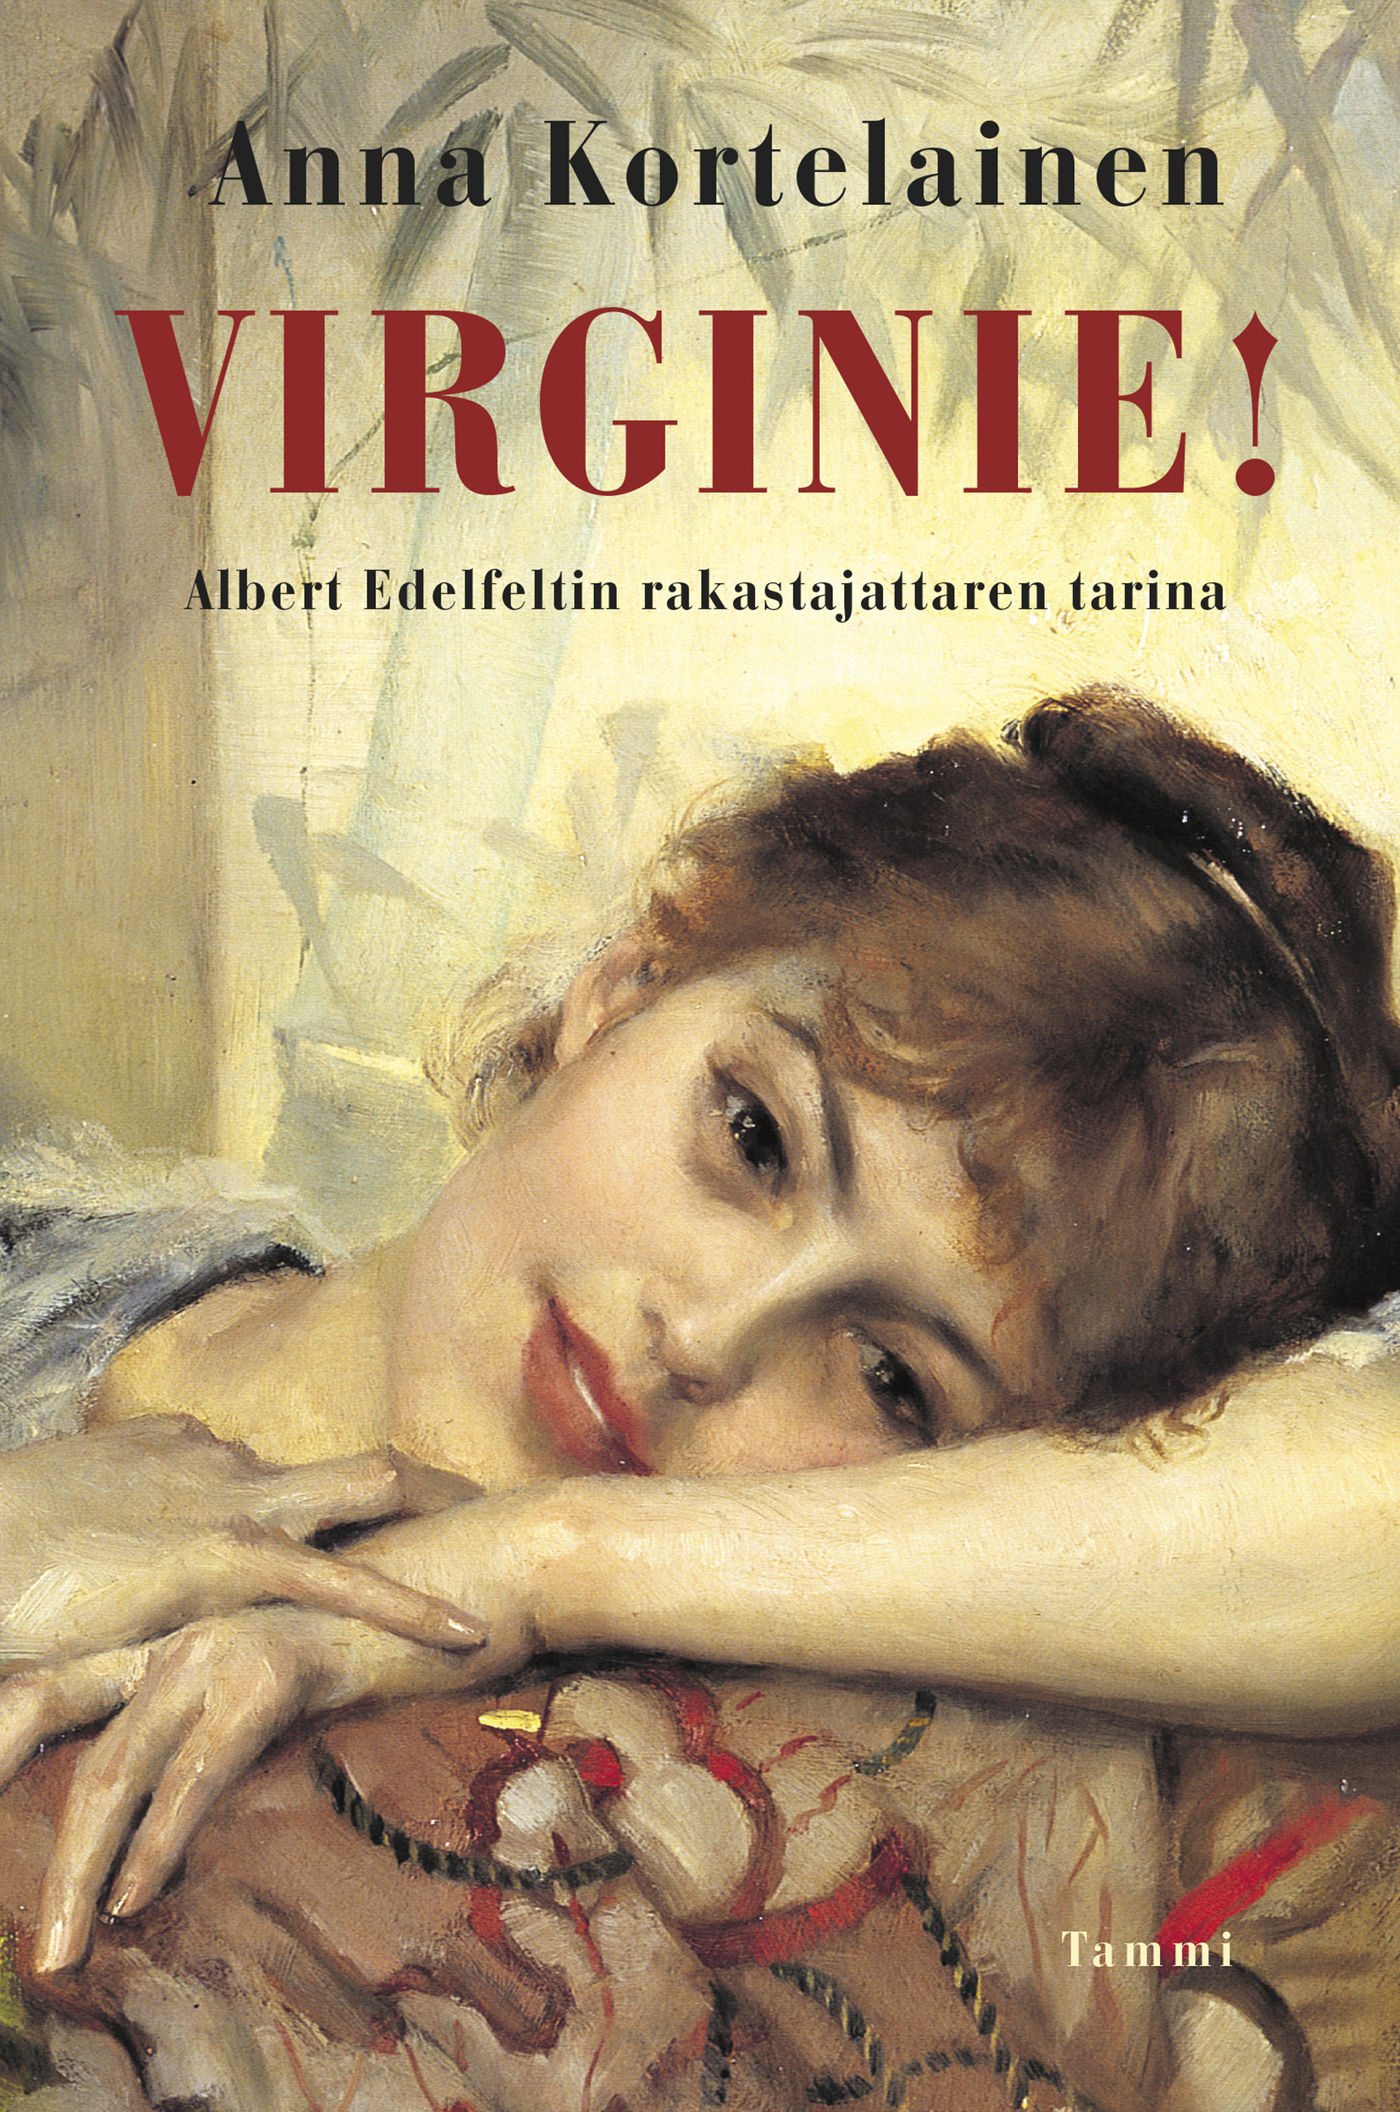 Kortelainen, Anna - Virginie!: Albert Edelfeltin rakastajattaren tarina, ebook